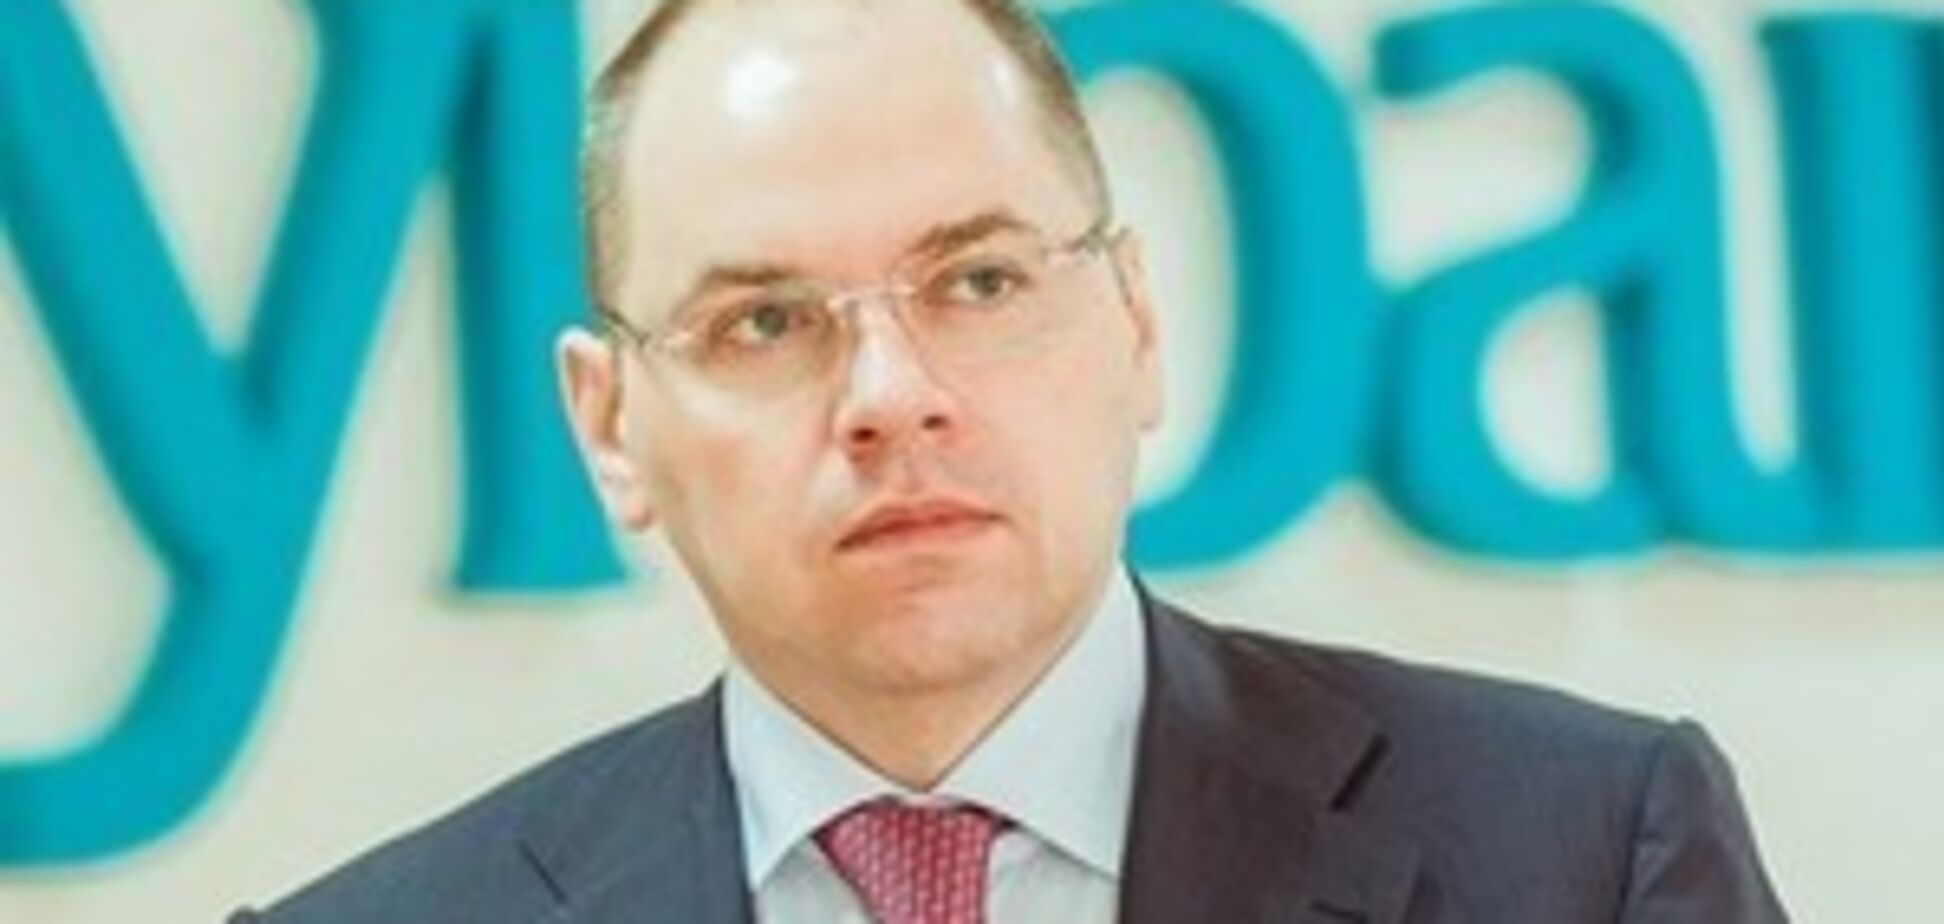 Государство должно возмещать убытки, причиненные бизнесу - губернатор Степанов